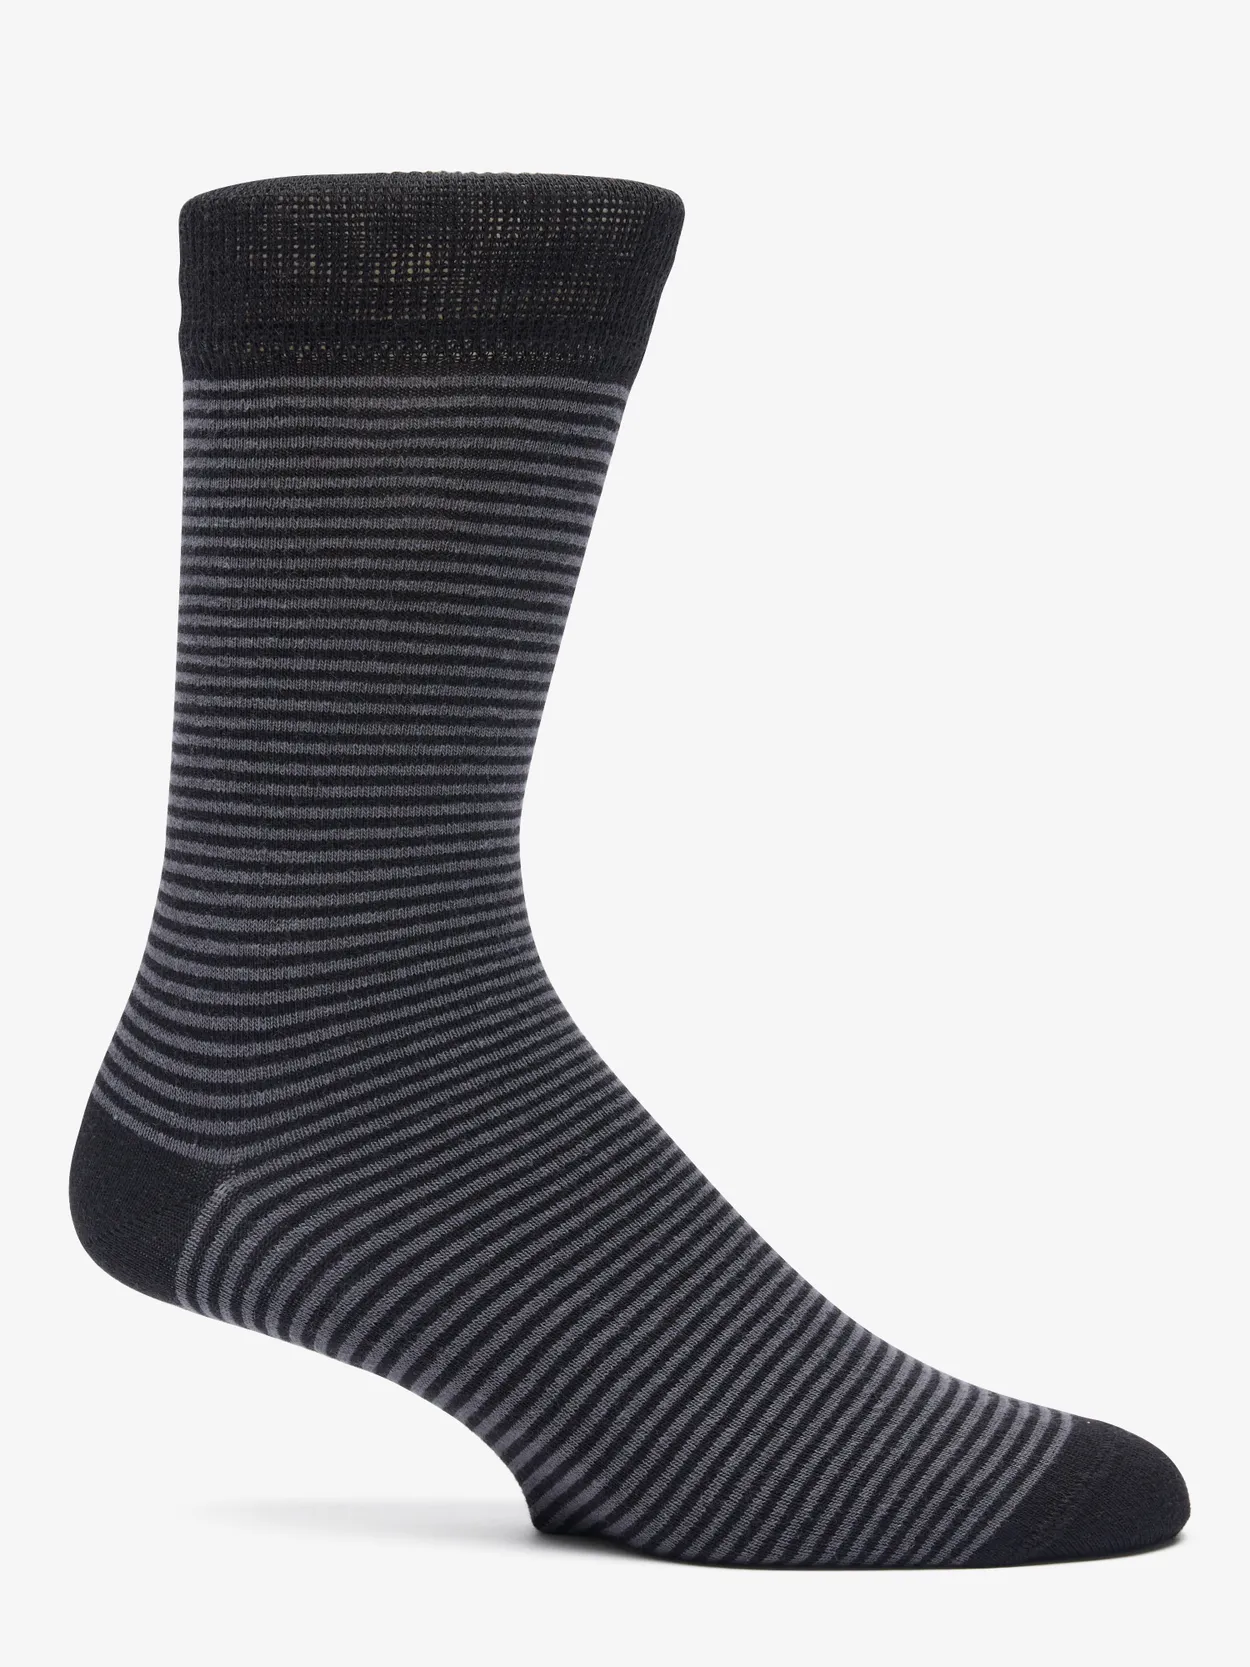 Black & Grey Socks Almeria